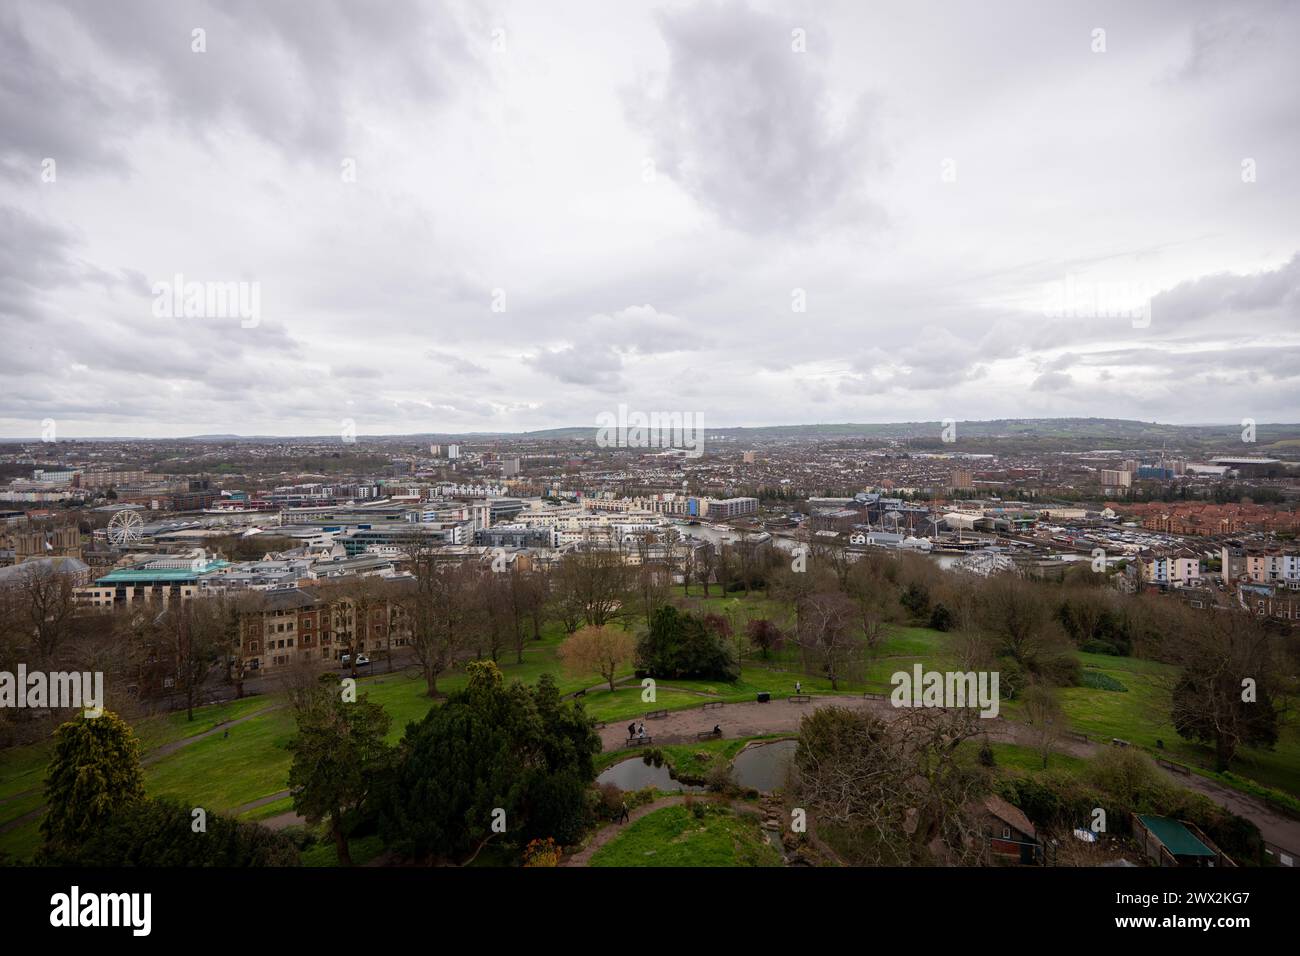 Blick vom Cabot Tower. Bristol, England, liegt in einem öffentlichen Park am Brandon Hill, zwischen dem Stadtzentrum, Clifton und Hotwells. Stellen Sie sich Garyroberts vor Stockfoto